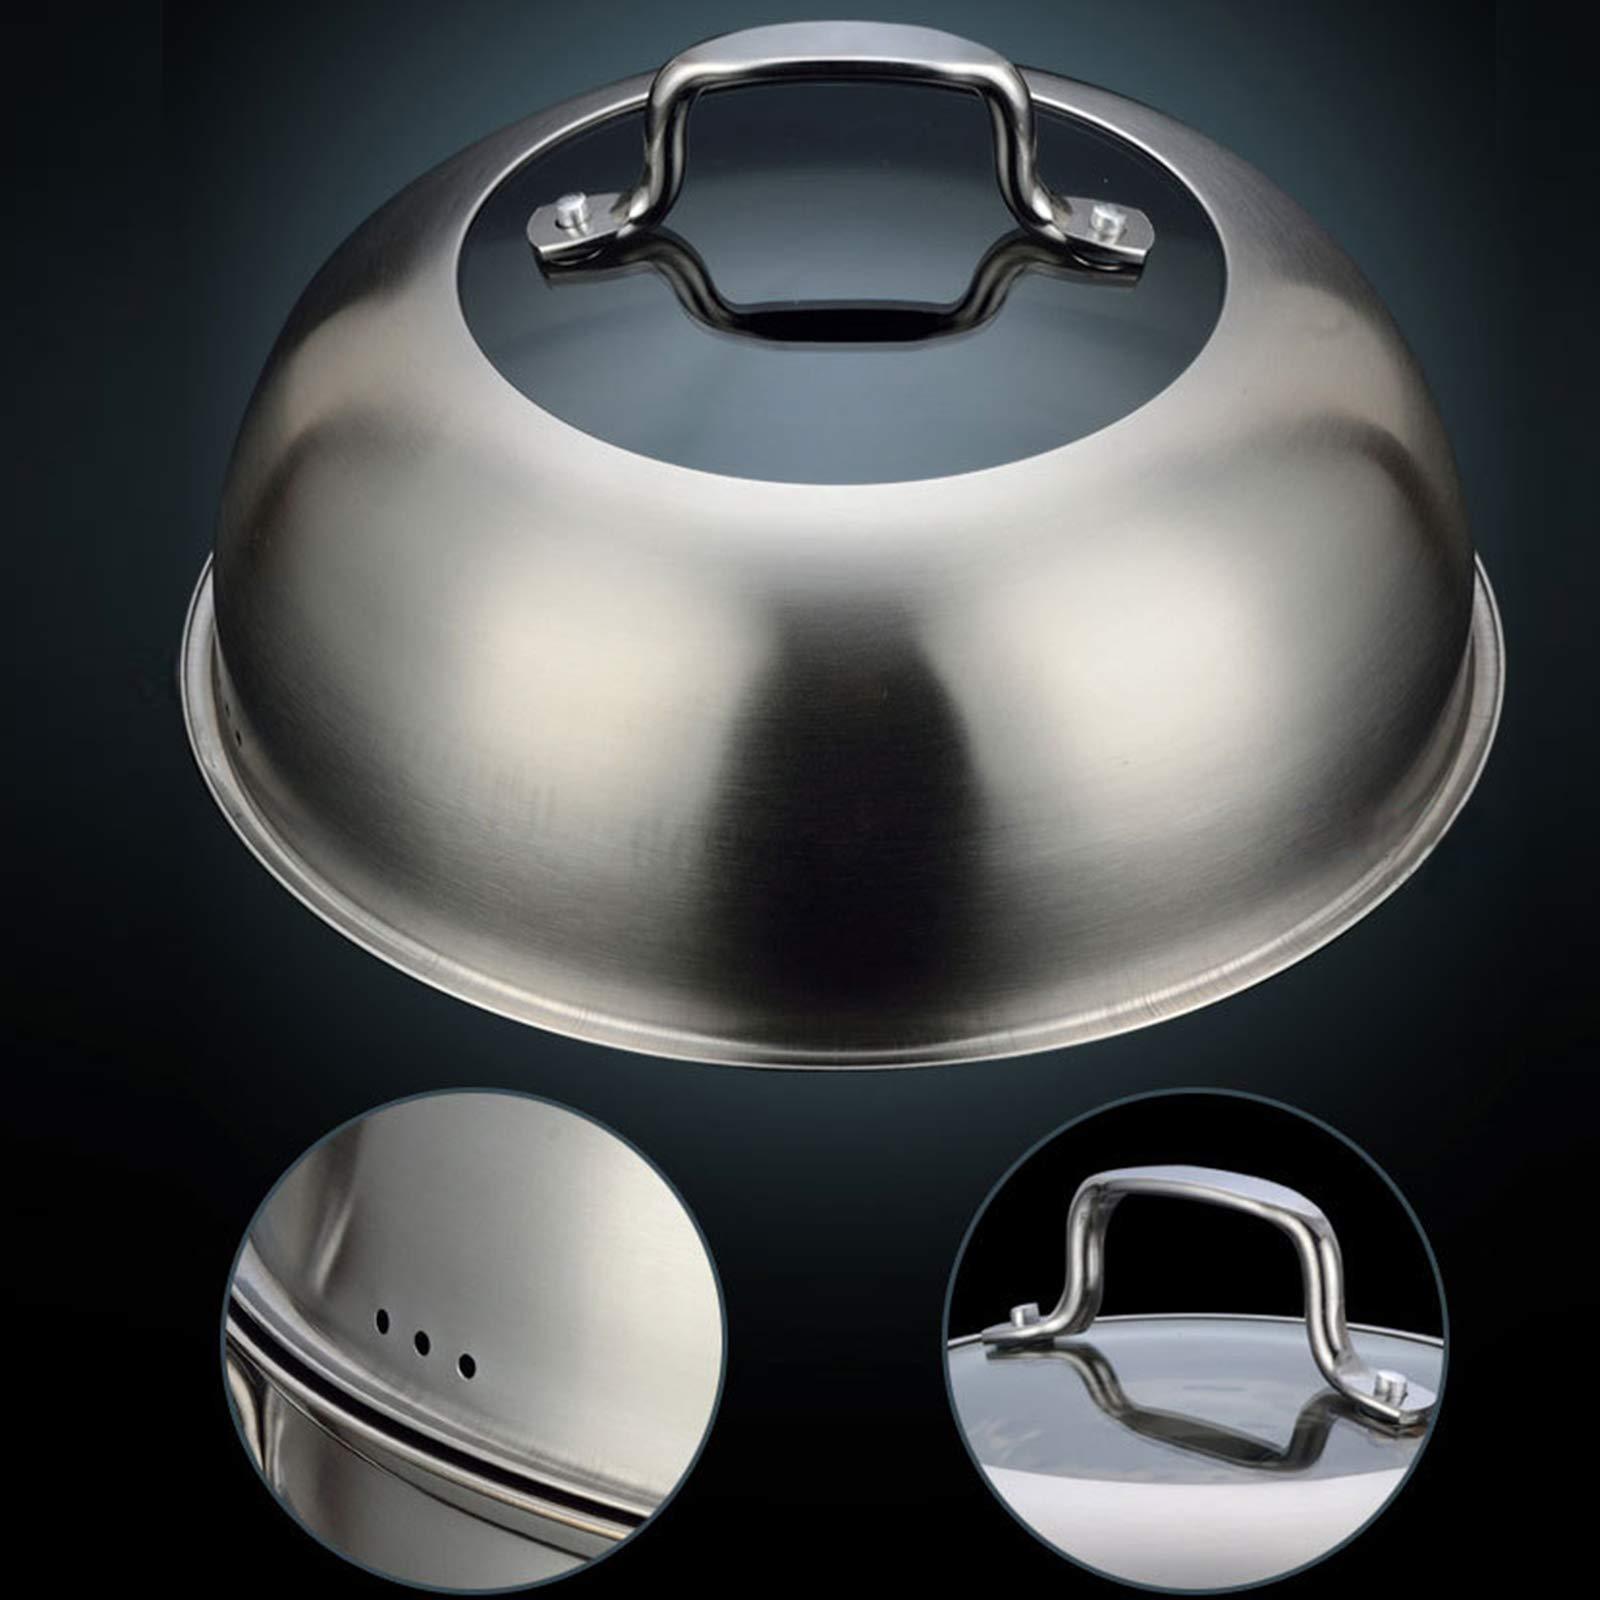 Cuiseur vapeur - 3 animaux - En acier inoxydable - Avec couvercle en verre - Multifonction - Pour plaques à induction, cuisinière électrique